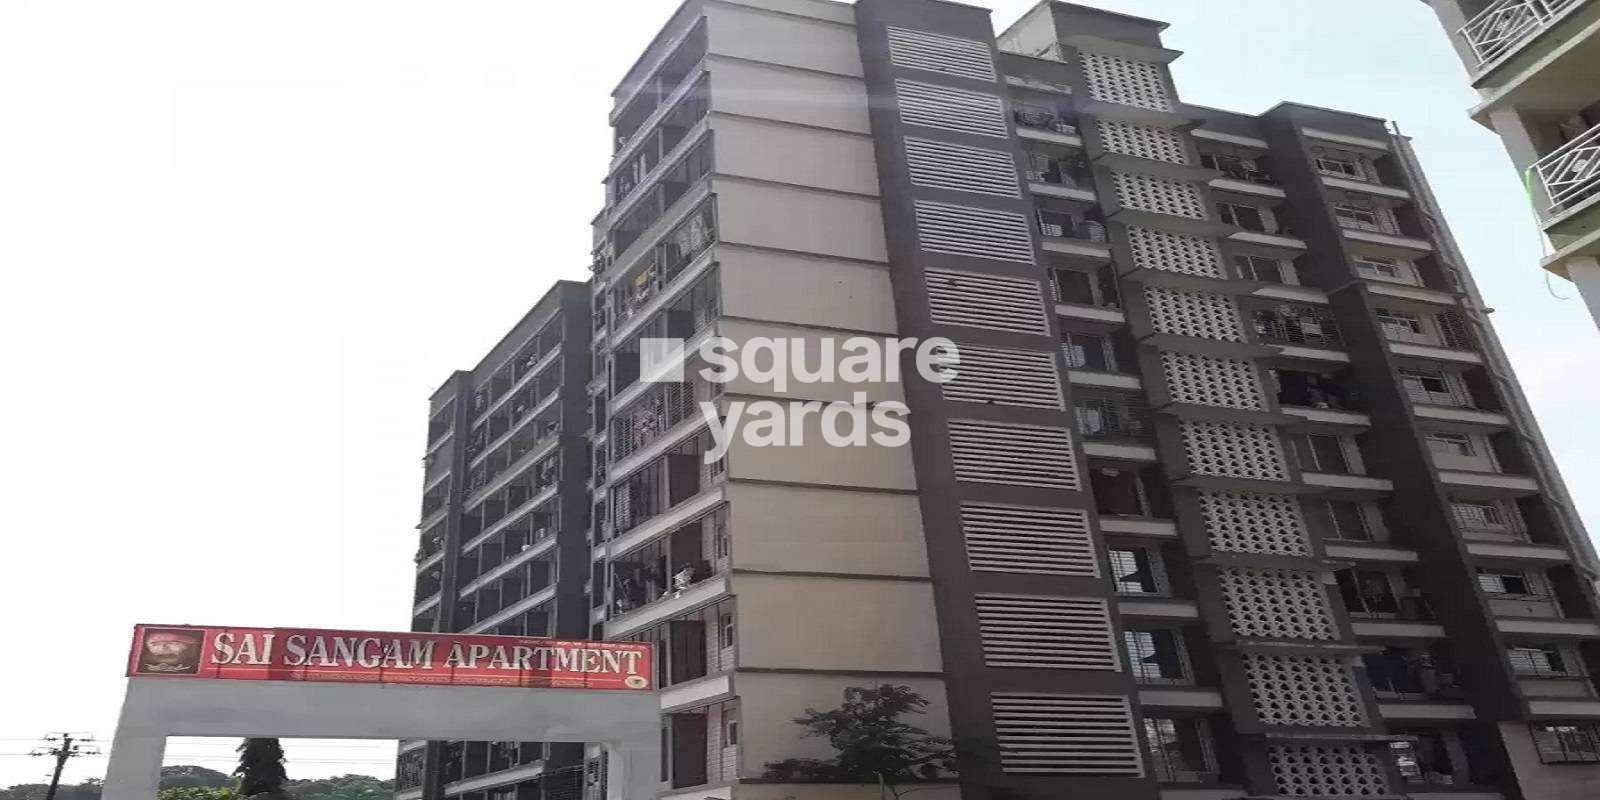 Sai Sangam Apartment Nalasopara Cover Image